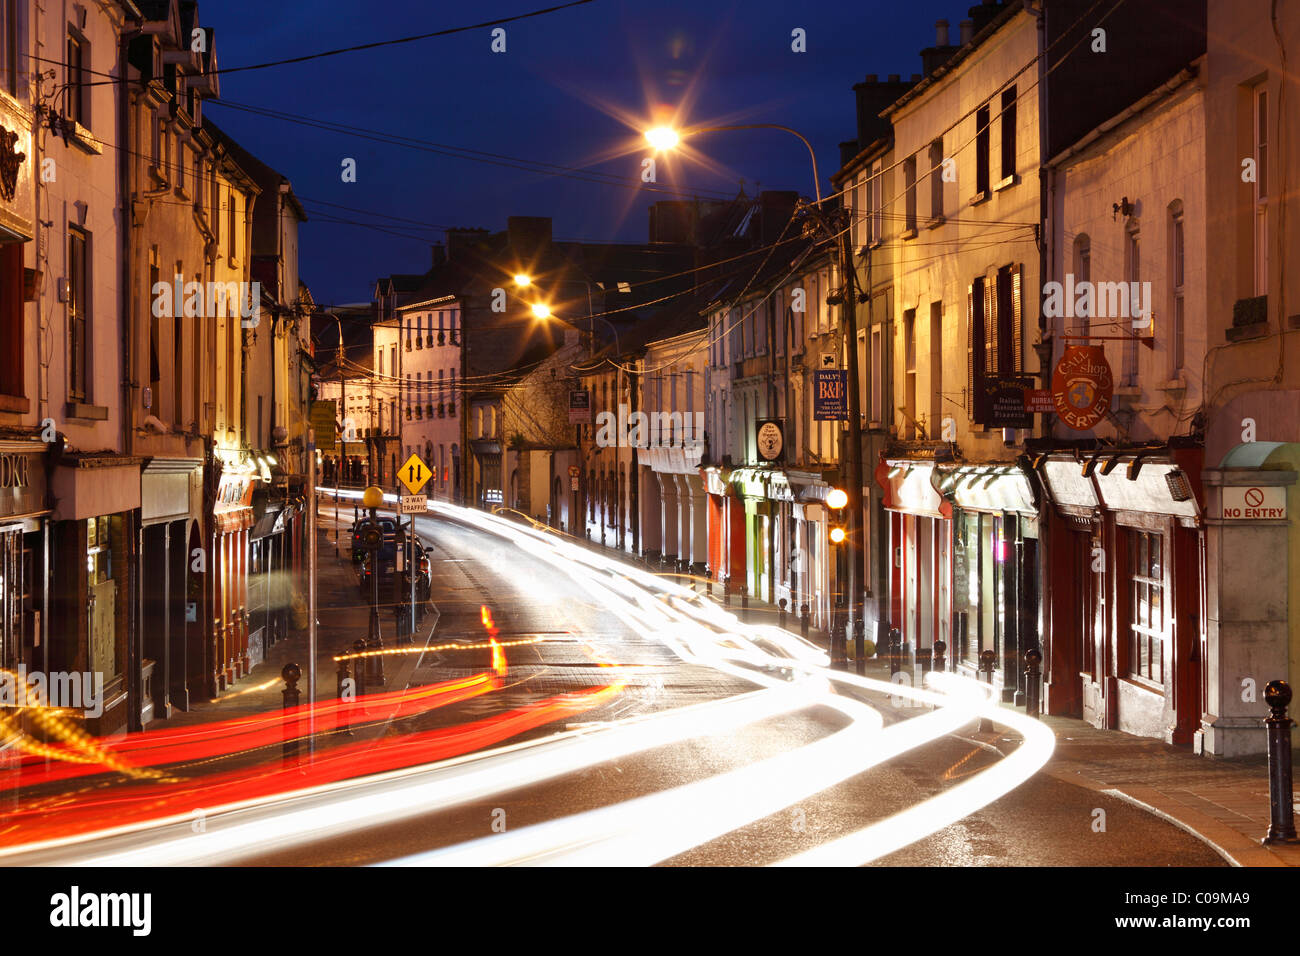 Le centre-ville de Kilkenny, comté de Kilkenny, République d'Irlande, British Isles, Europe Banque D'Images